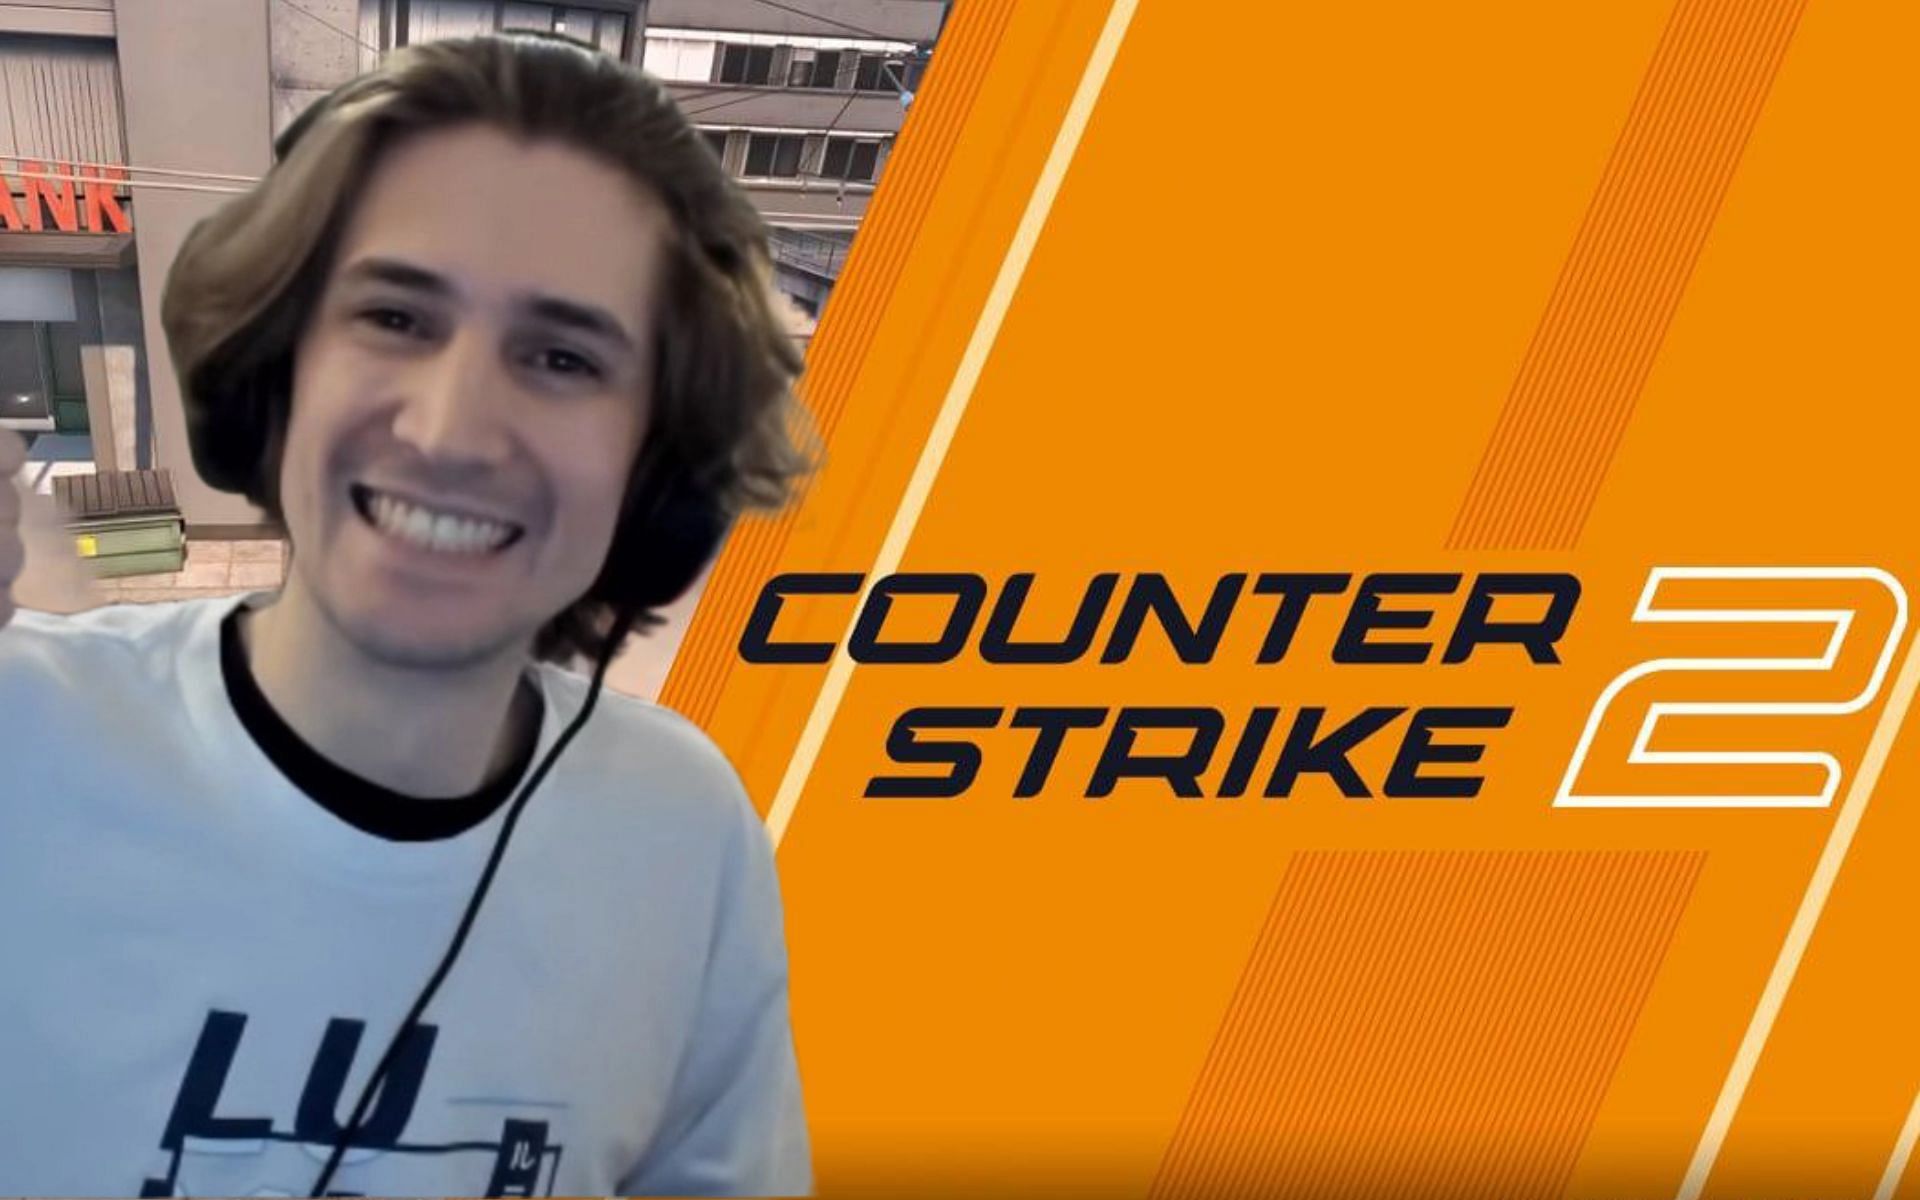 xQc revela que ha sido invitado a jugar Counter-Strike 2, y muestra mensajes directos en Twitter